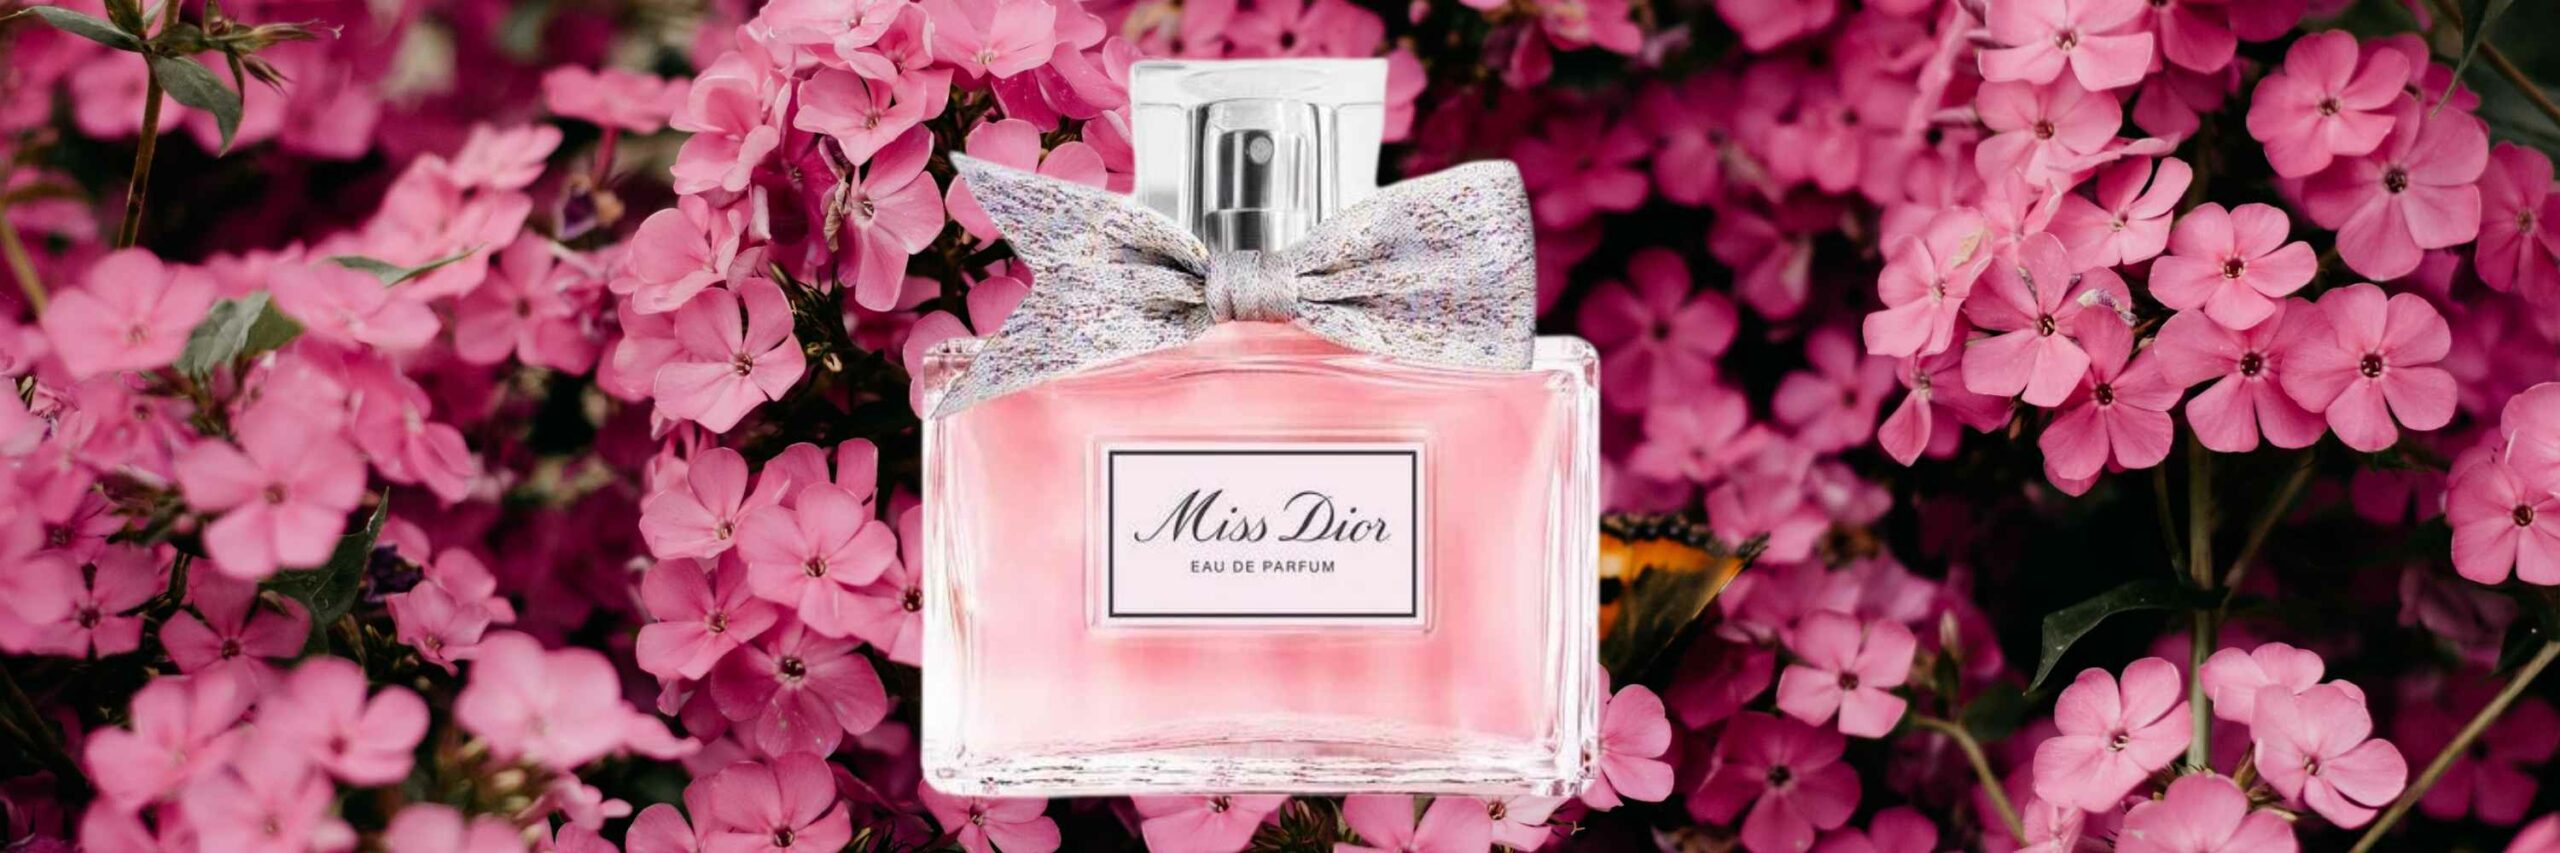 Nước hoa Dior nữ nào thơm nhất Top 11 mẫu bán chạy nhất